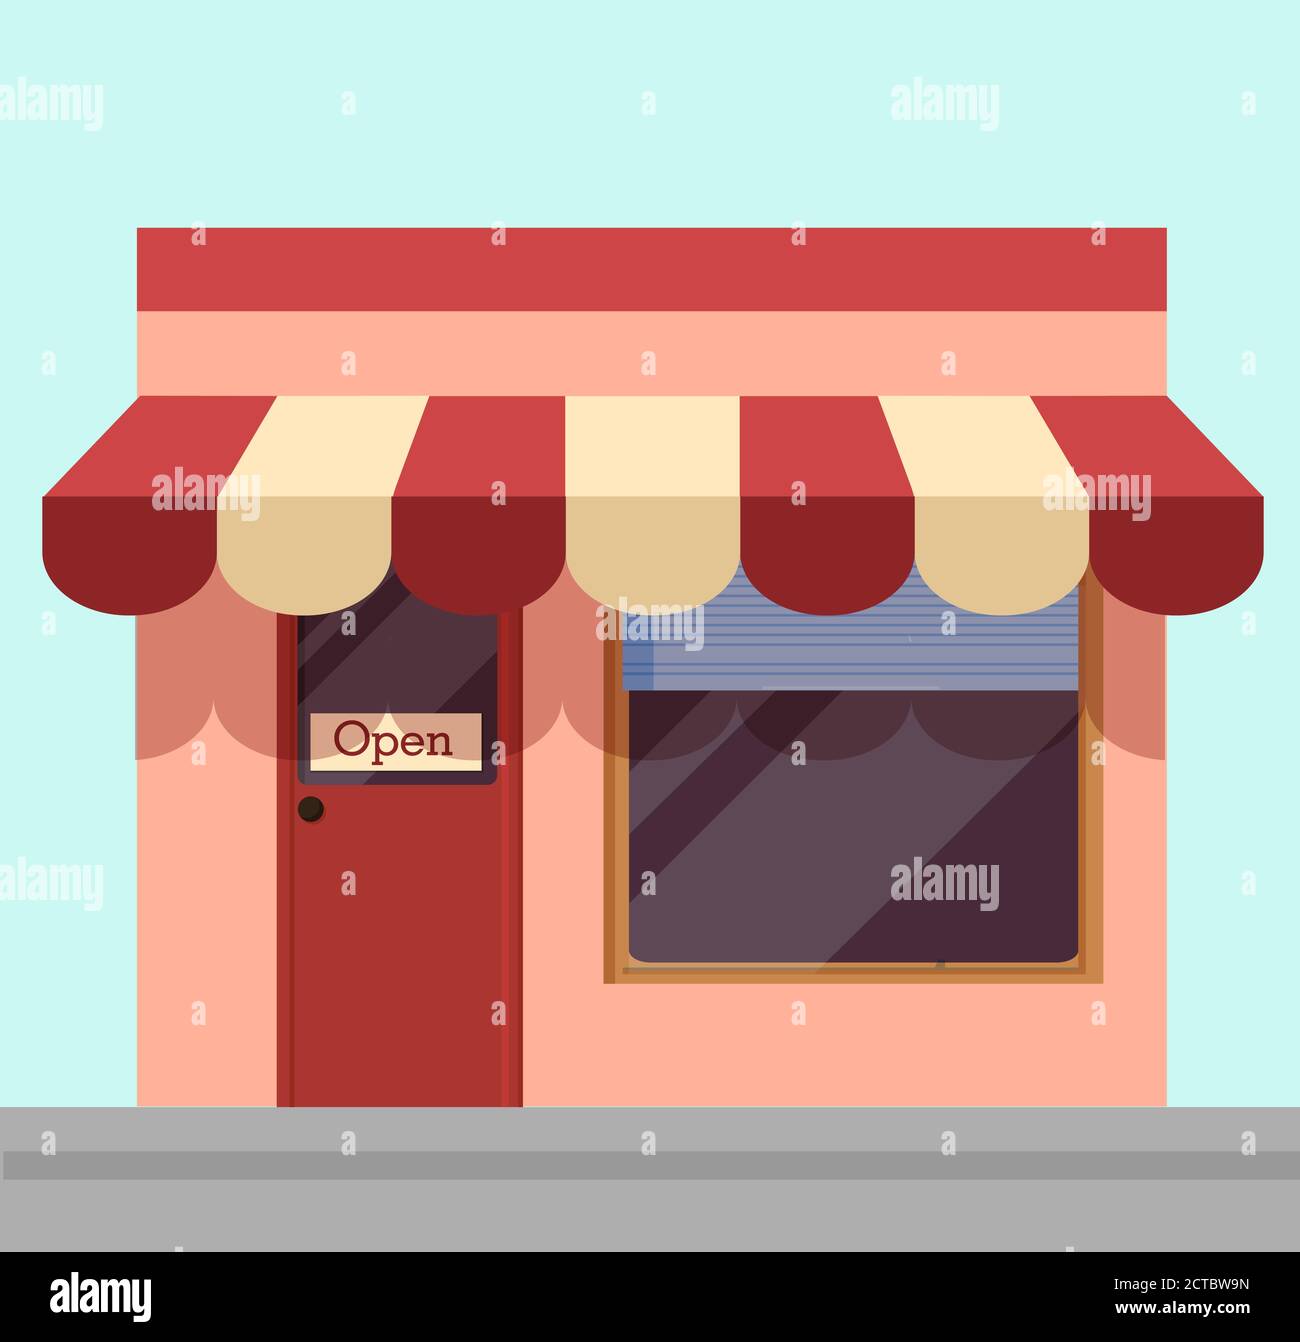 Abbildung öffnen. Cartoon-Shopping-Kiosk mit weißen und roten Markise für Besucher geöffnet. Stock Vektor